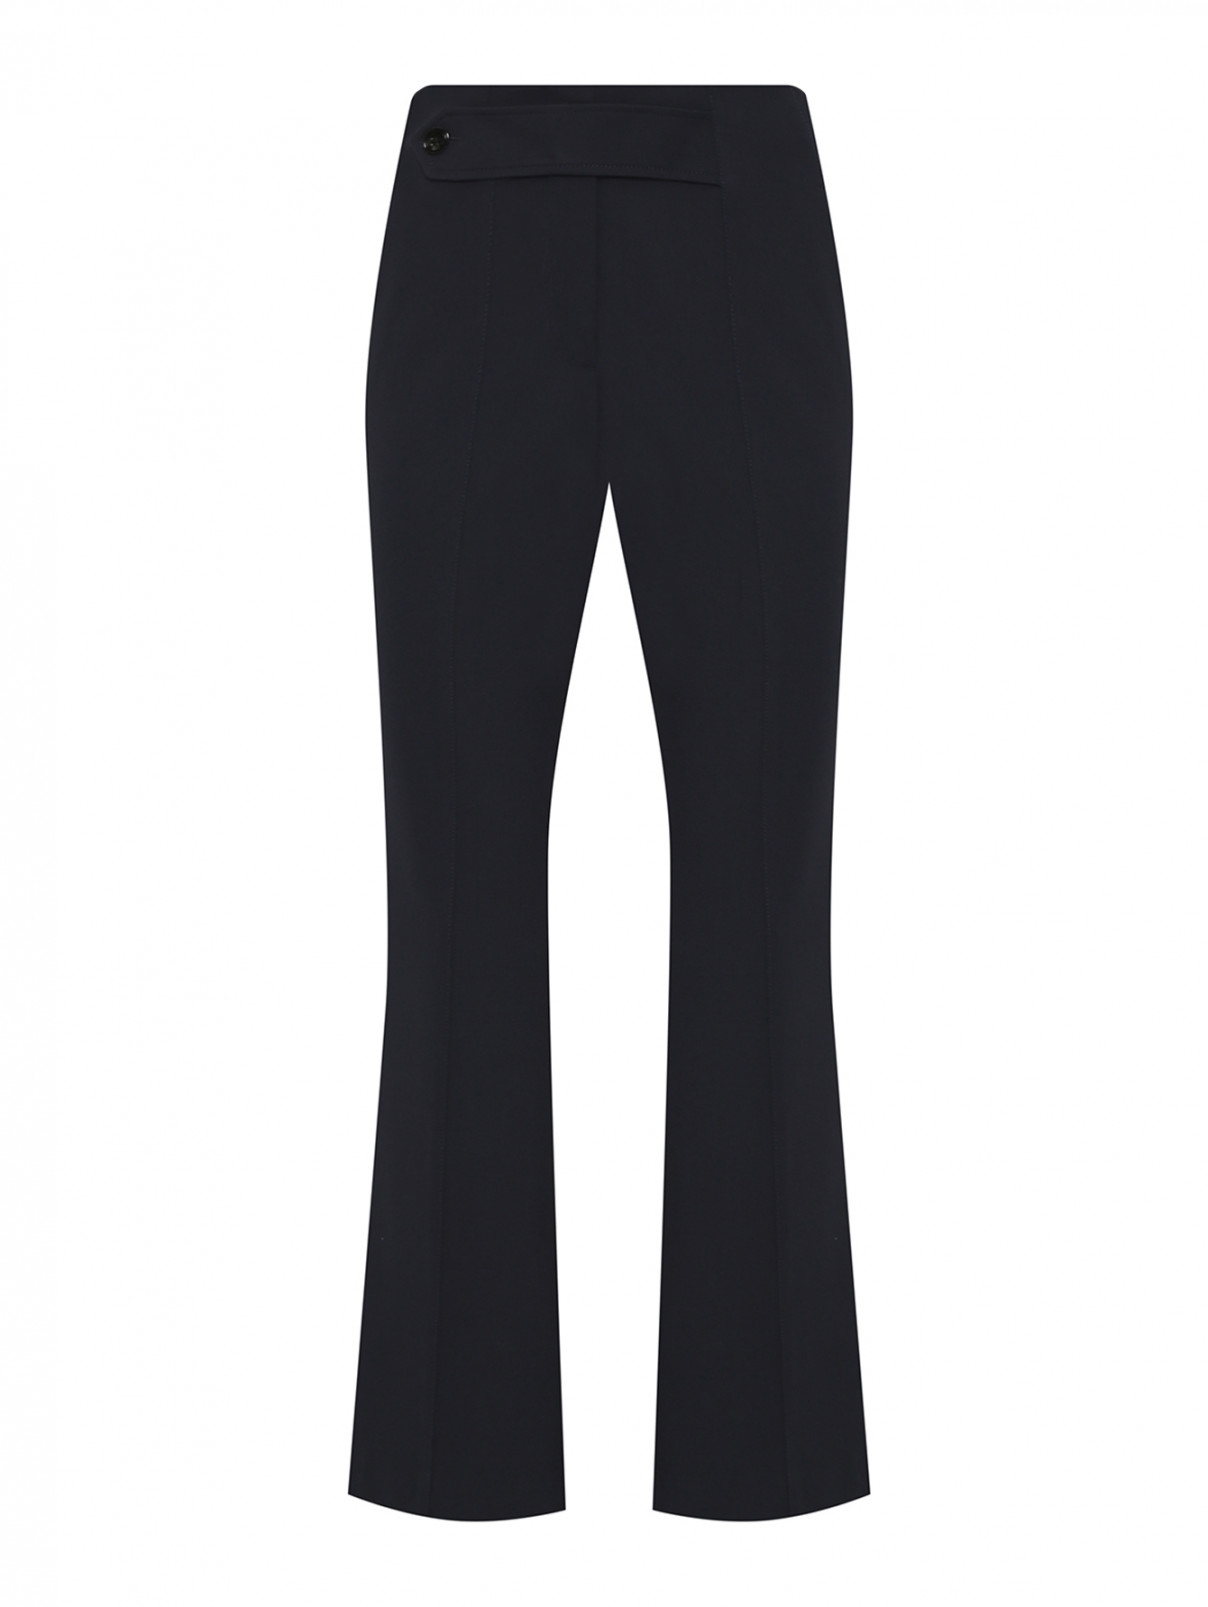 Укороченные трикотажные брюки с декоративным поясом Dorothee Schumacher  –  Общий вид  – Цвет:  Черный